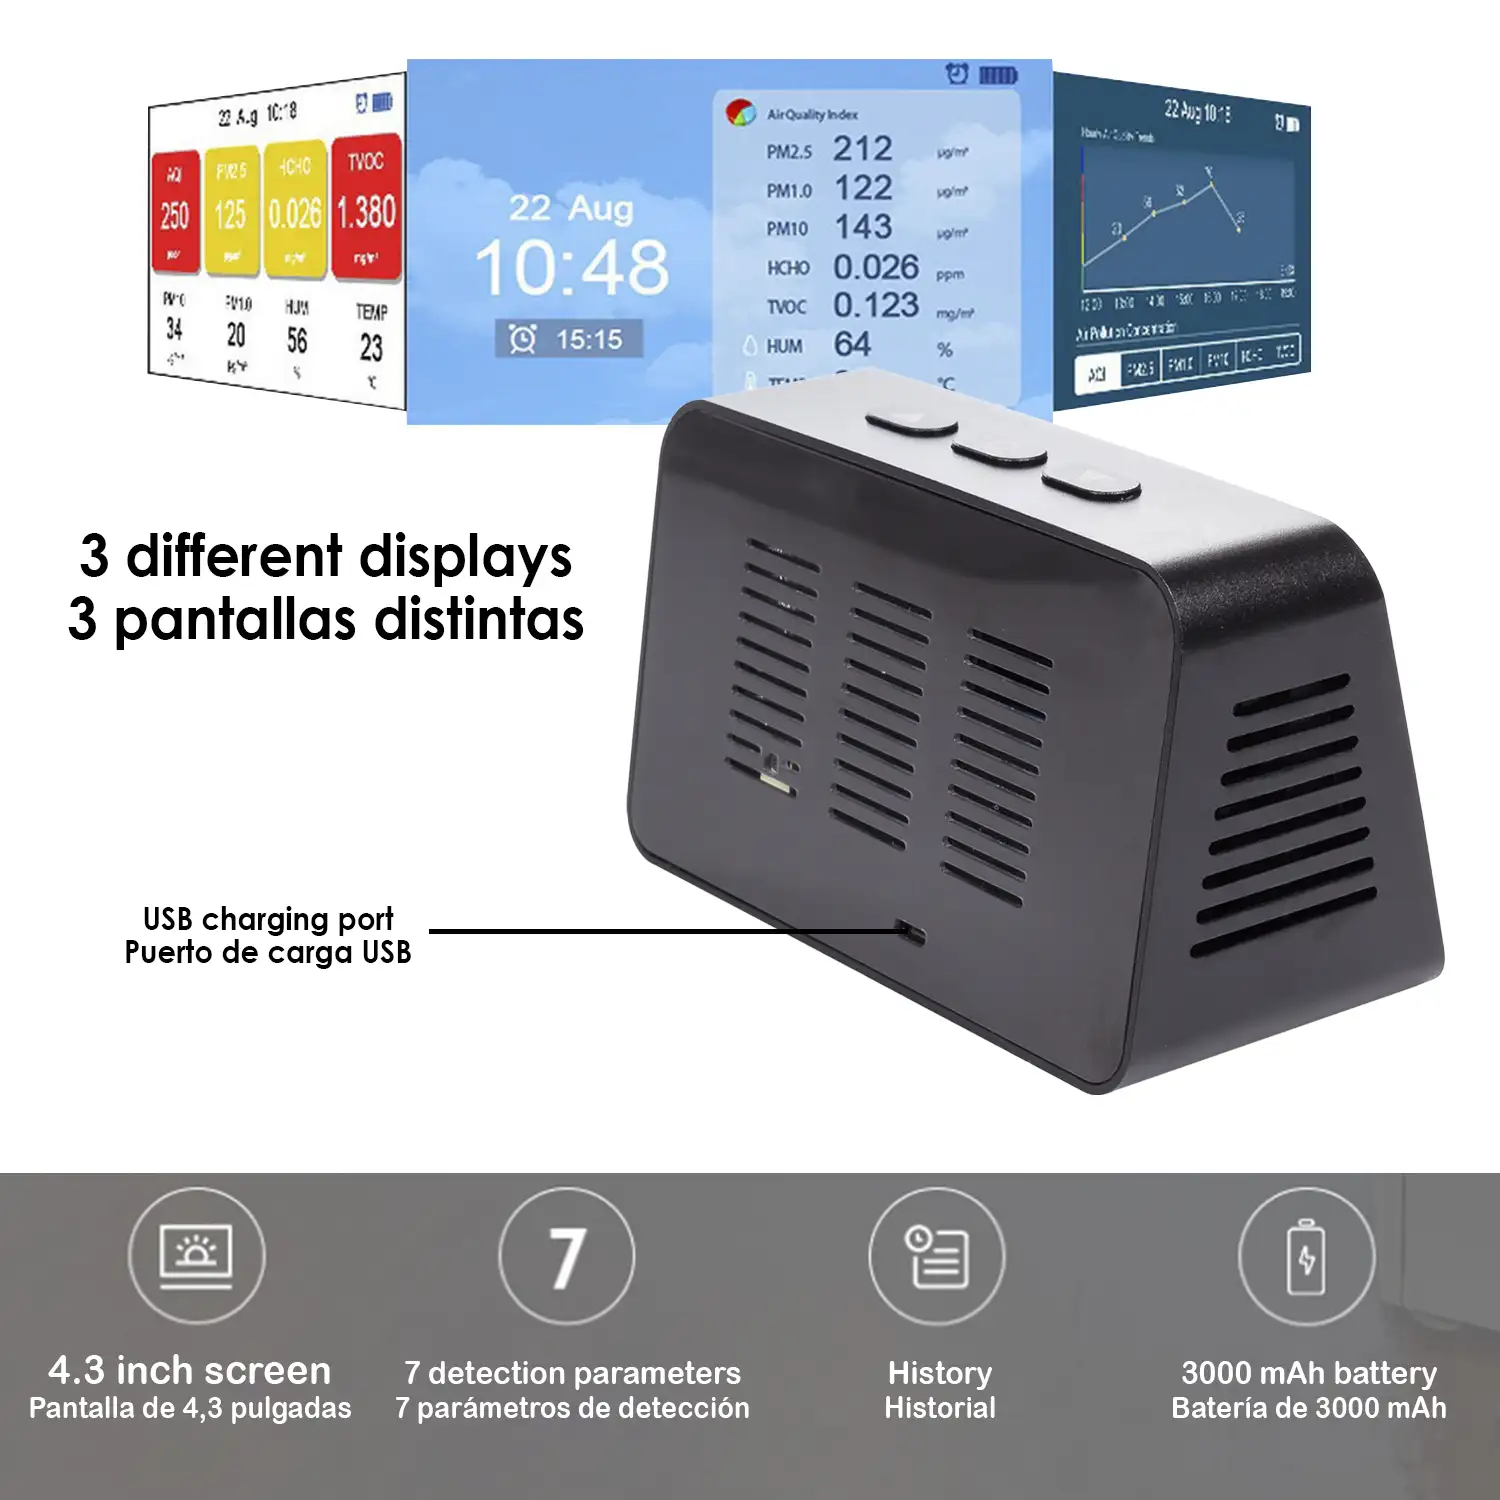 Medidor de calidad de aire interior con termómetro e higrómetro. Pantalla LCD a color.